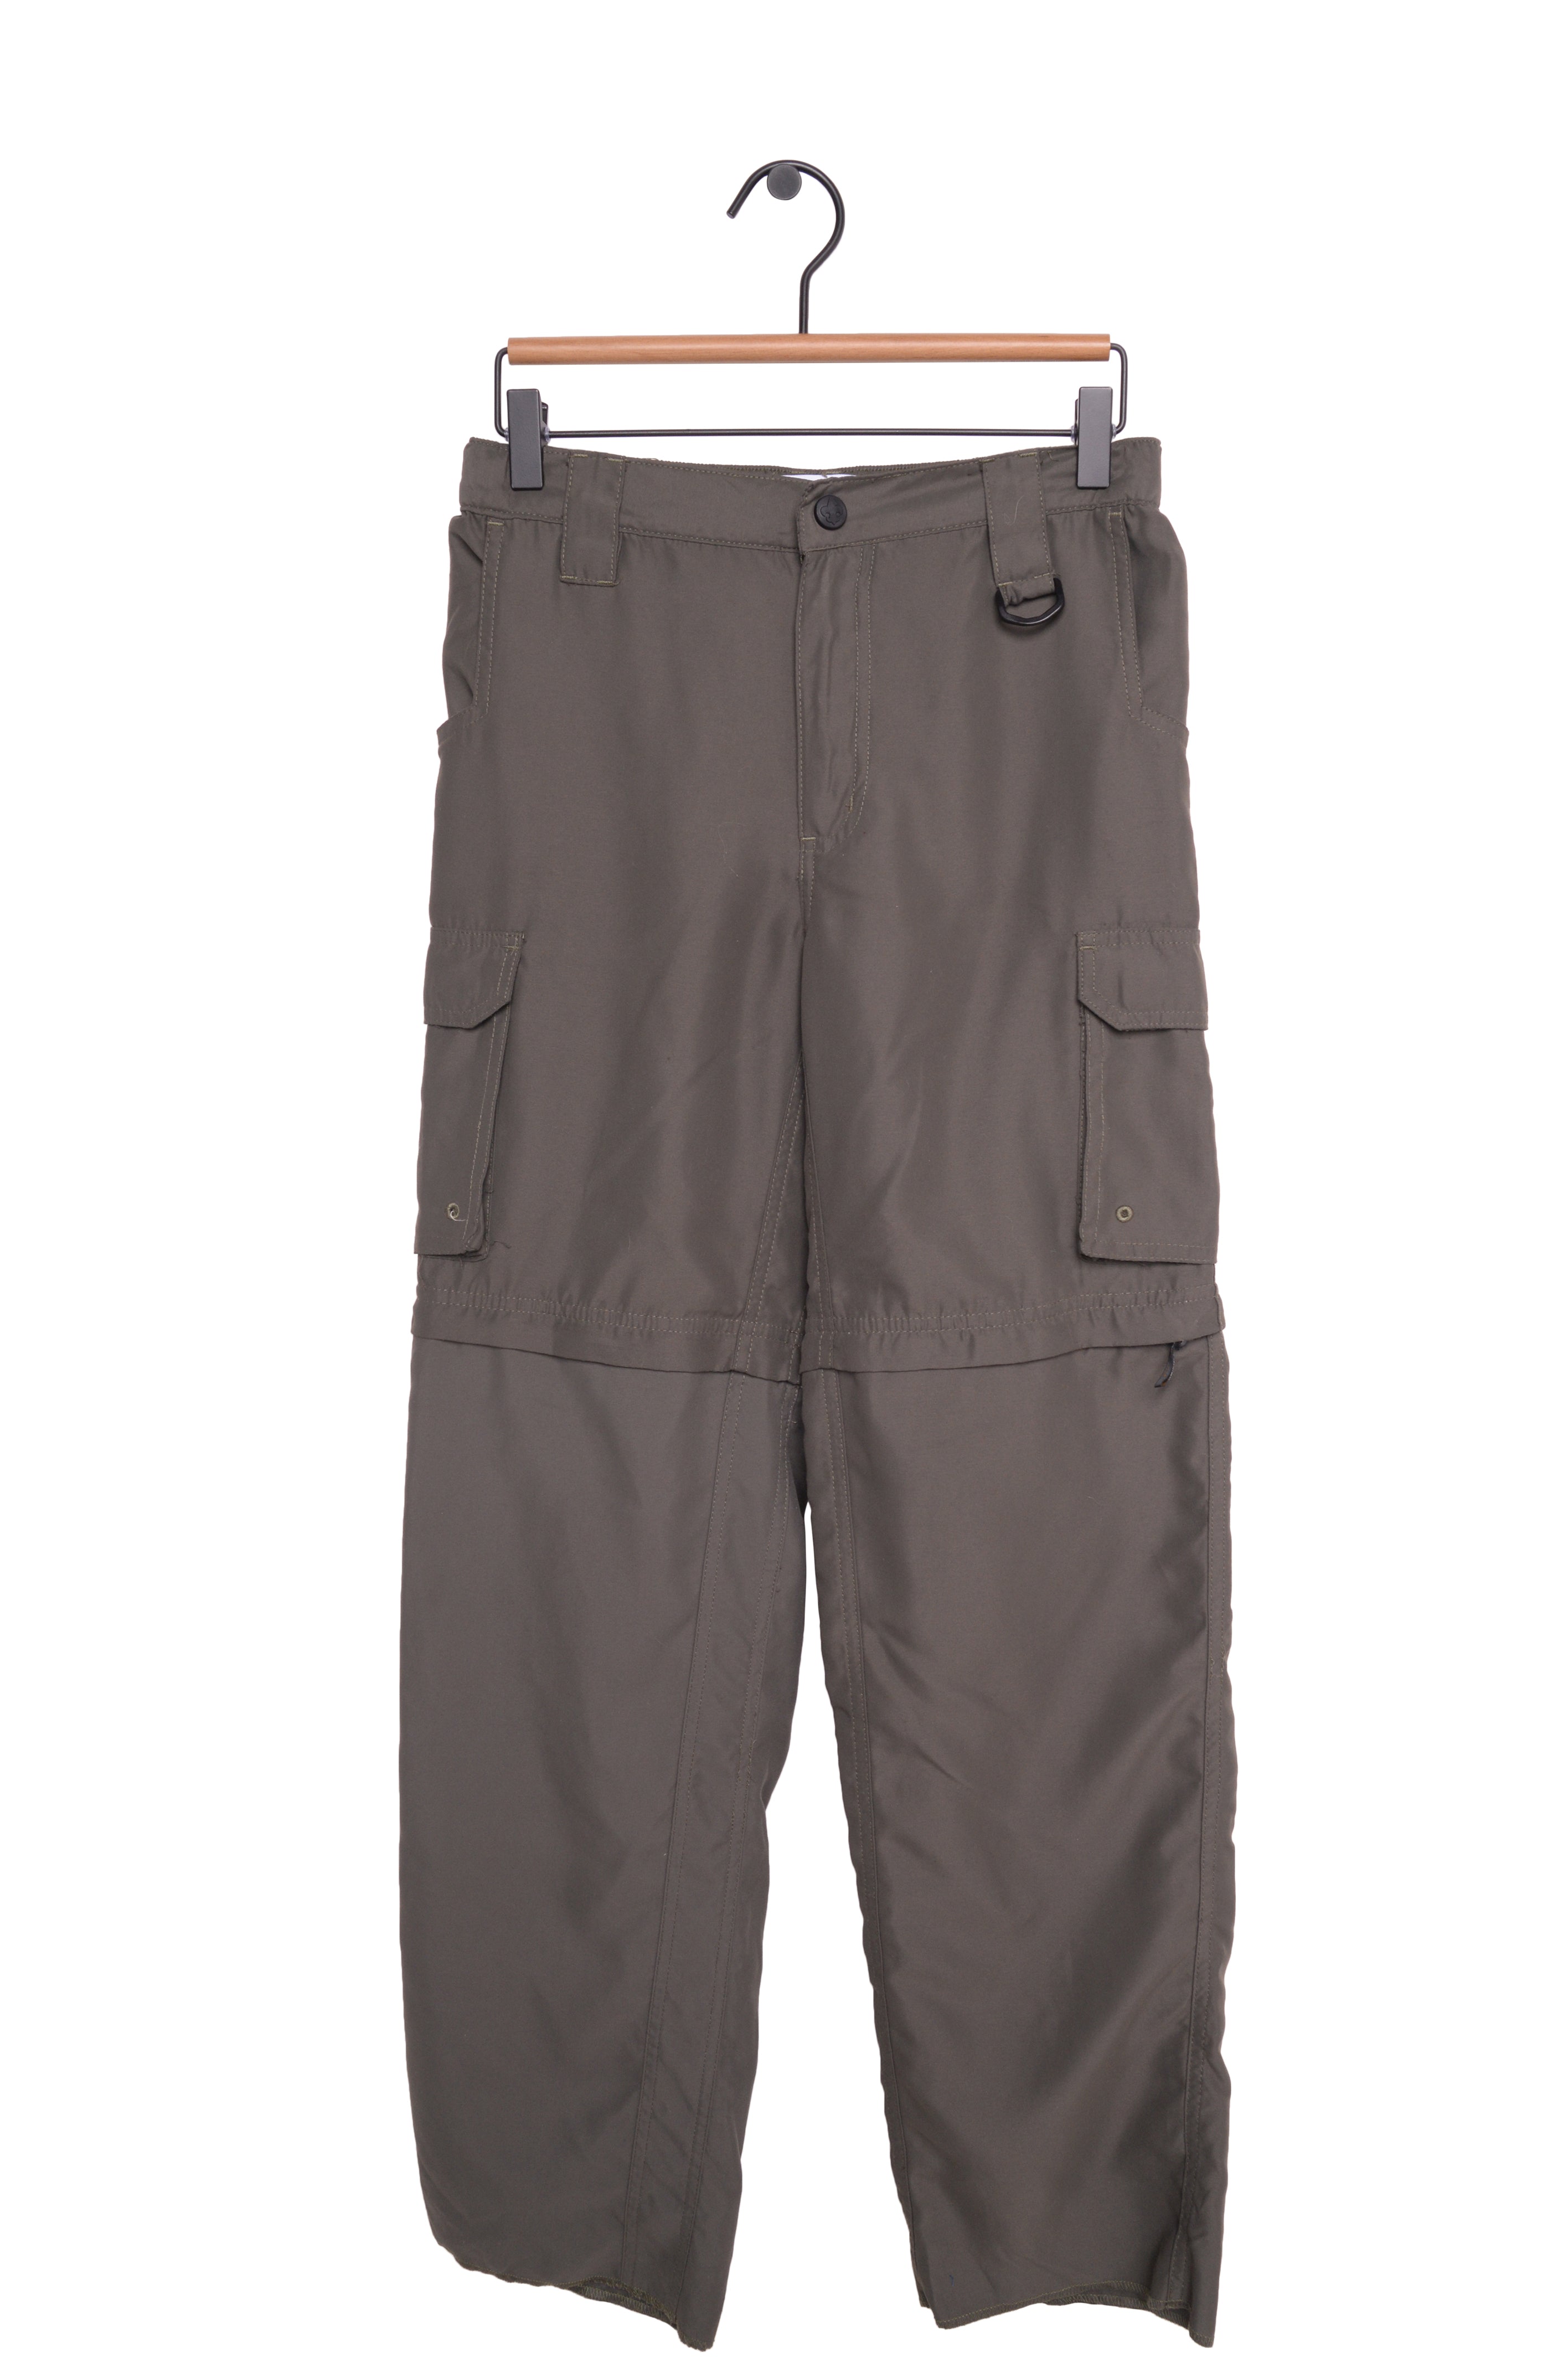 adidas Terrex Utilitas Hiking Zip OFF Pants - Men's outdoor pants |  SportFits Shop